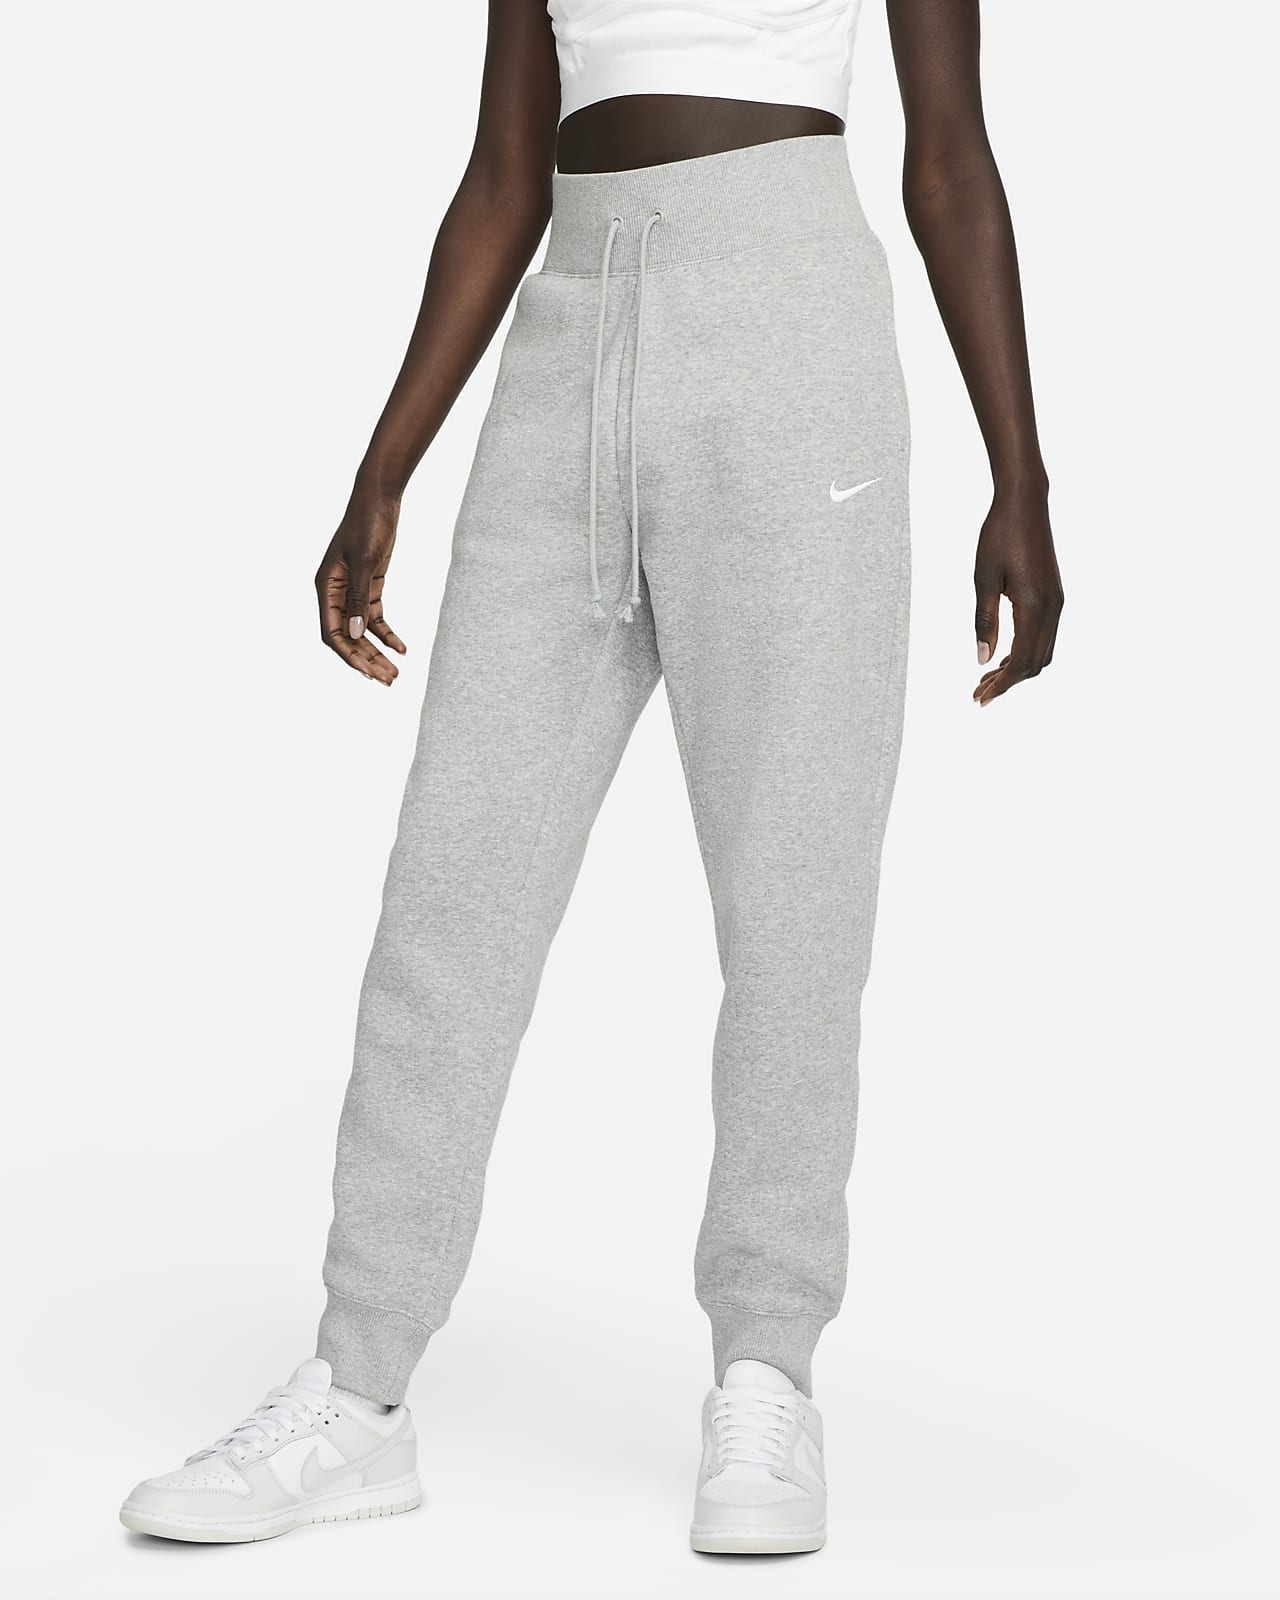 Nike Sportswear Phoenix Fleece magas derekú női szabadidőnadrág